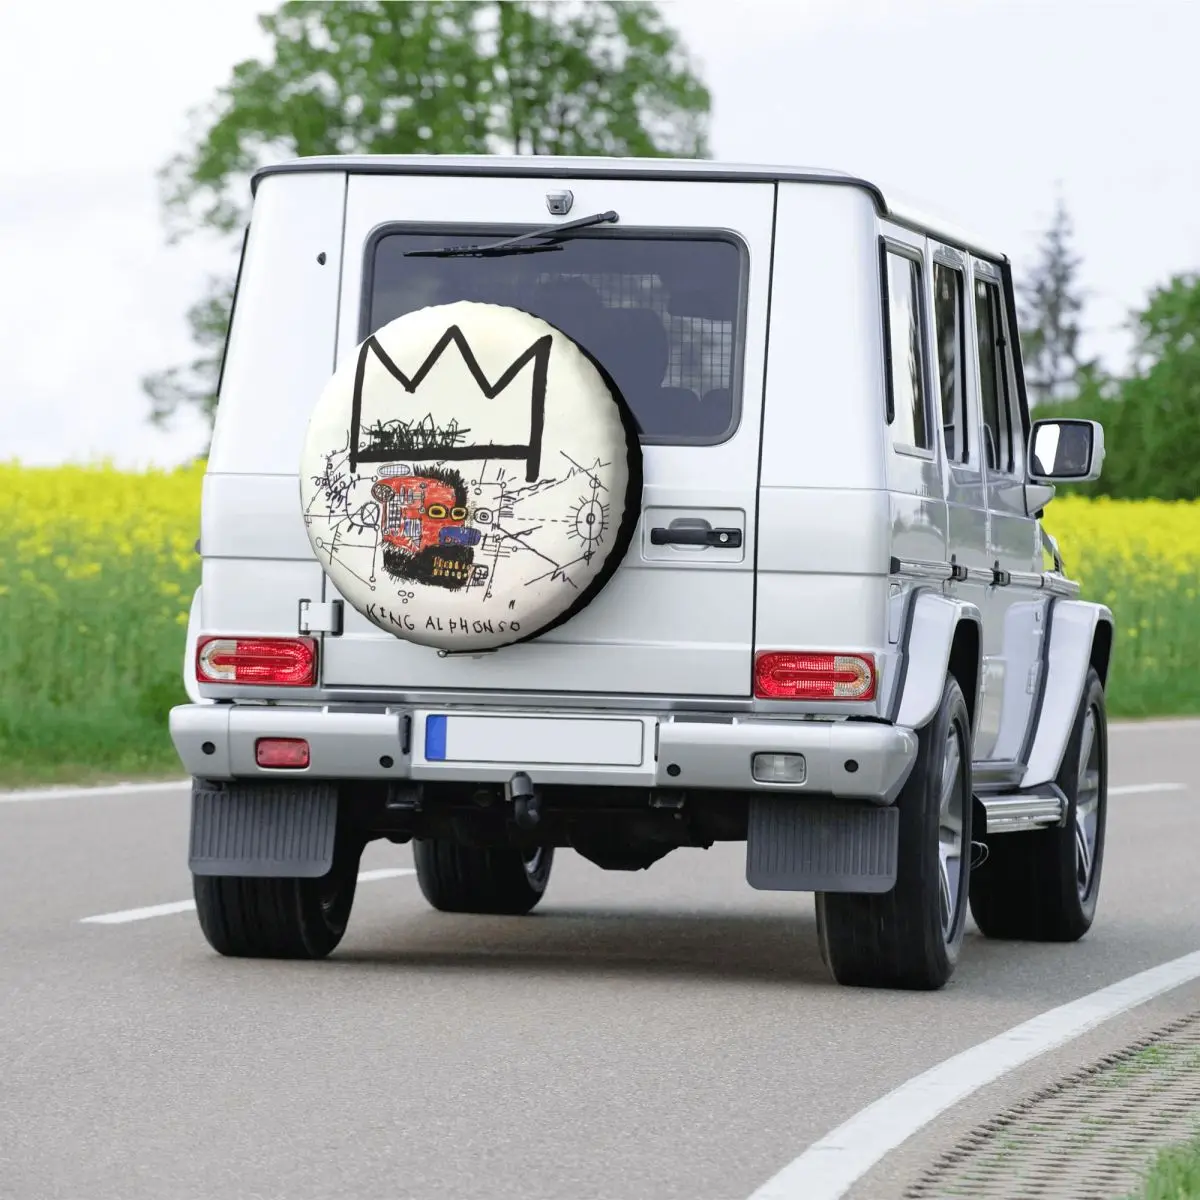 Кутията с резервна гума King Alphonso за Теглича на Джип Mitsubishi Pajero 4WD По Поръчка Basquiats Протектор гуми 14 